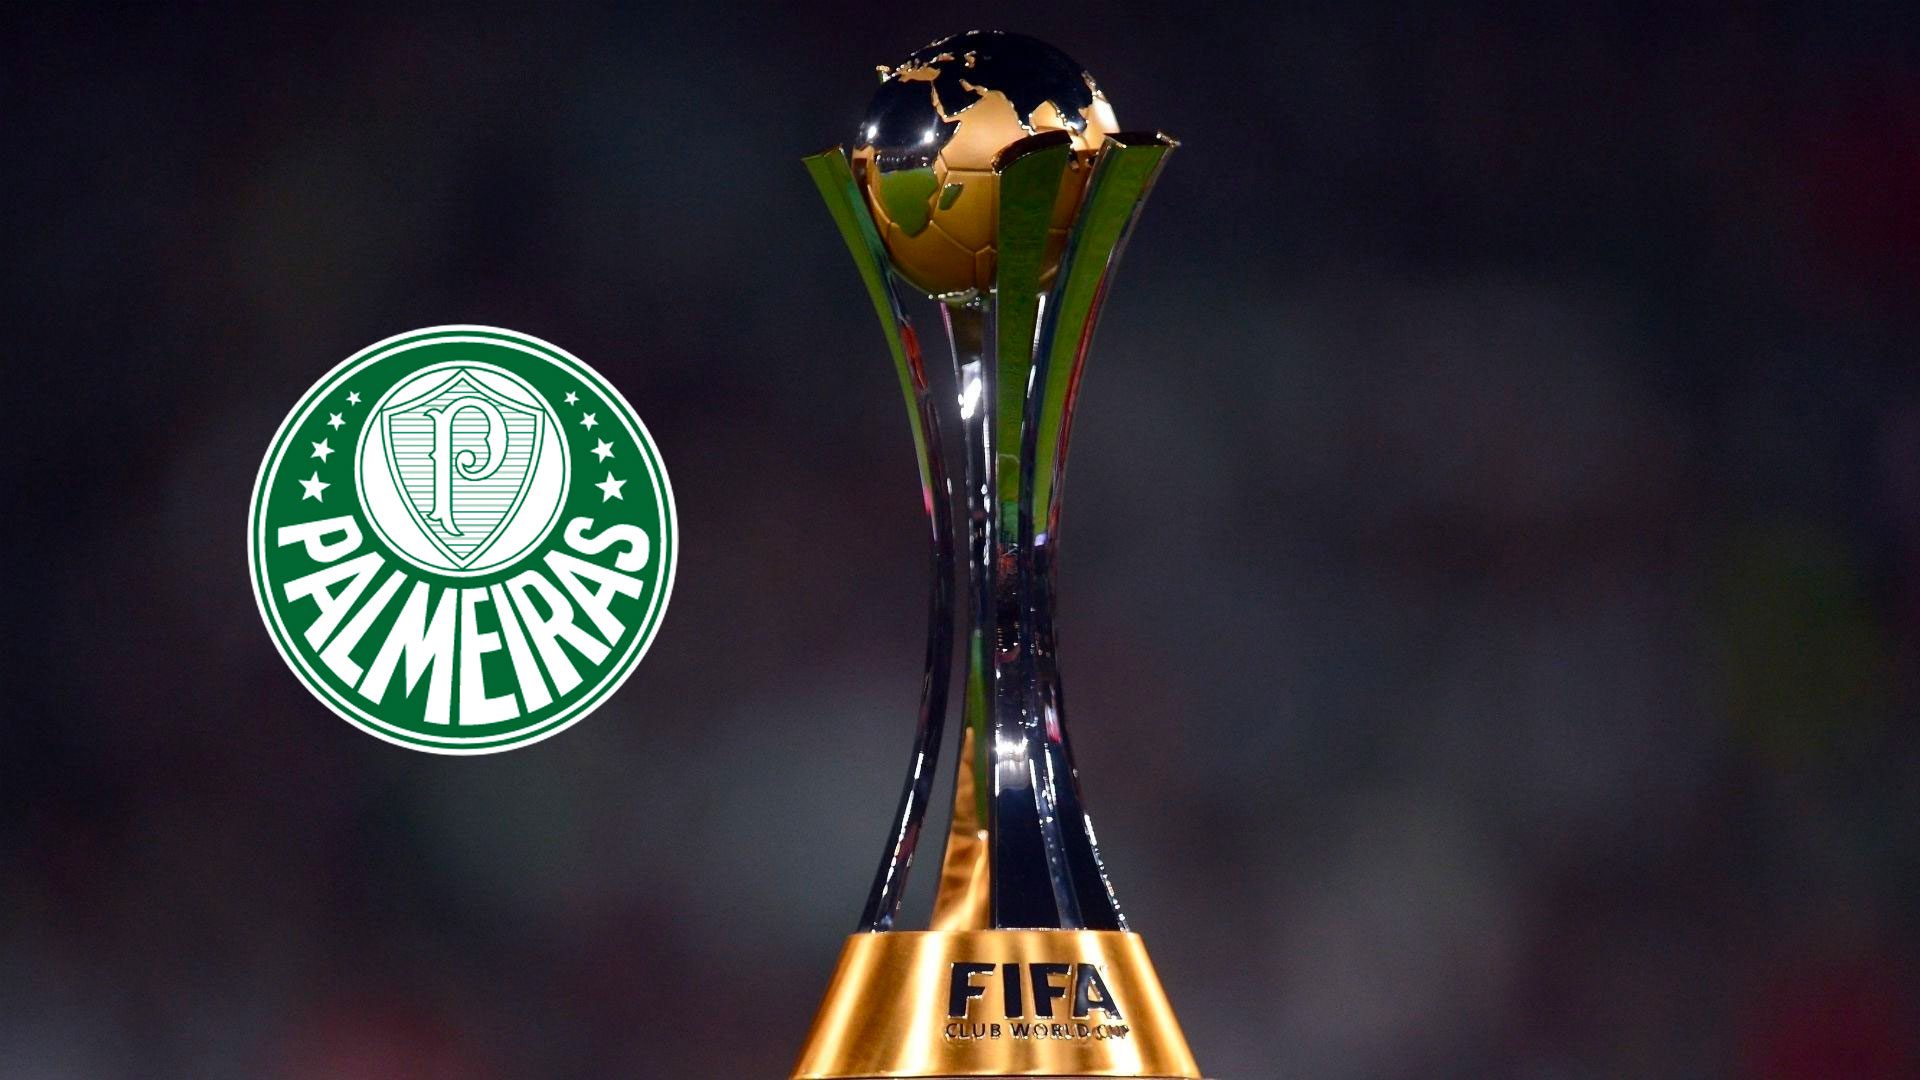 Fifa diz que Palmeiras é o 1º campeão mundial de clubes - Correio